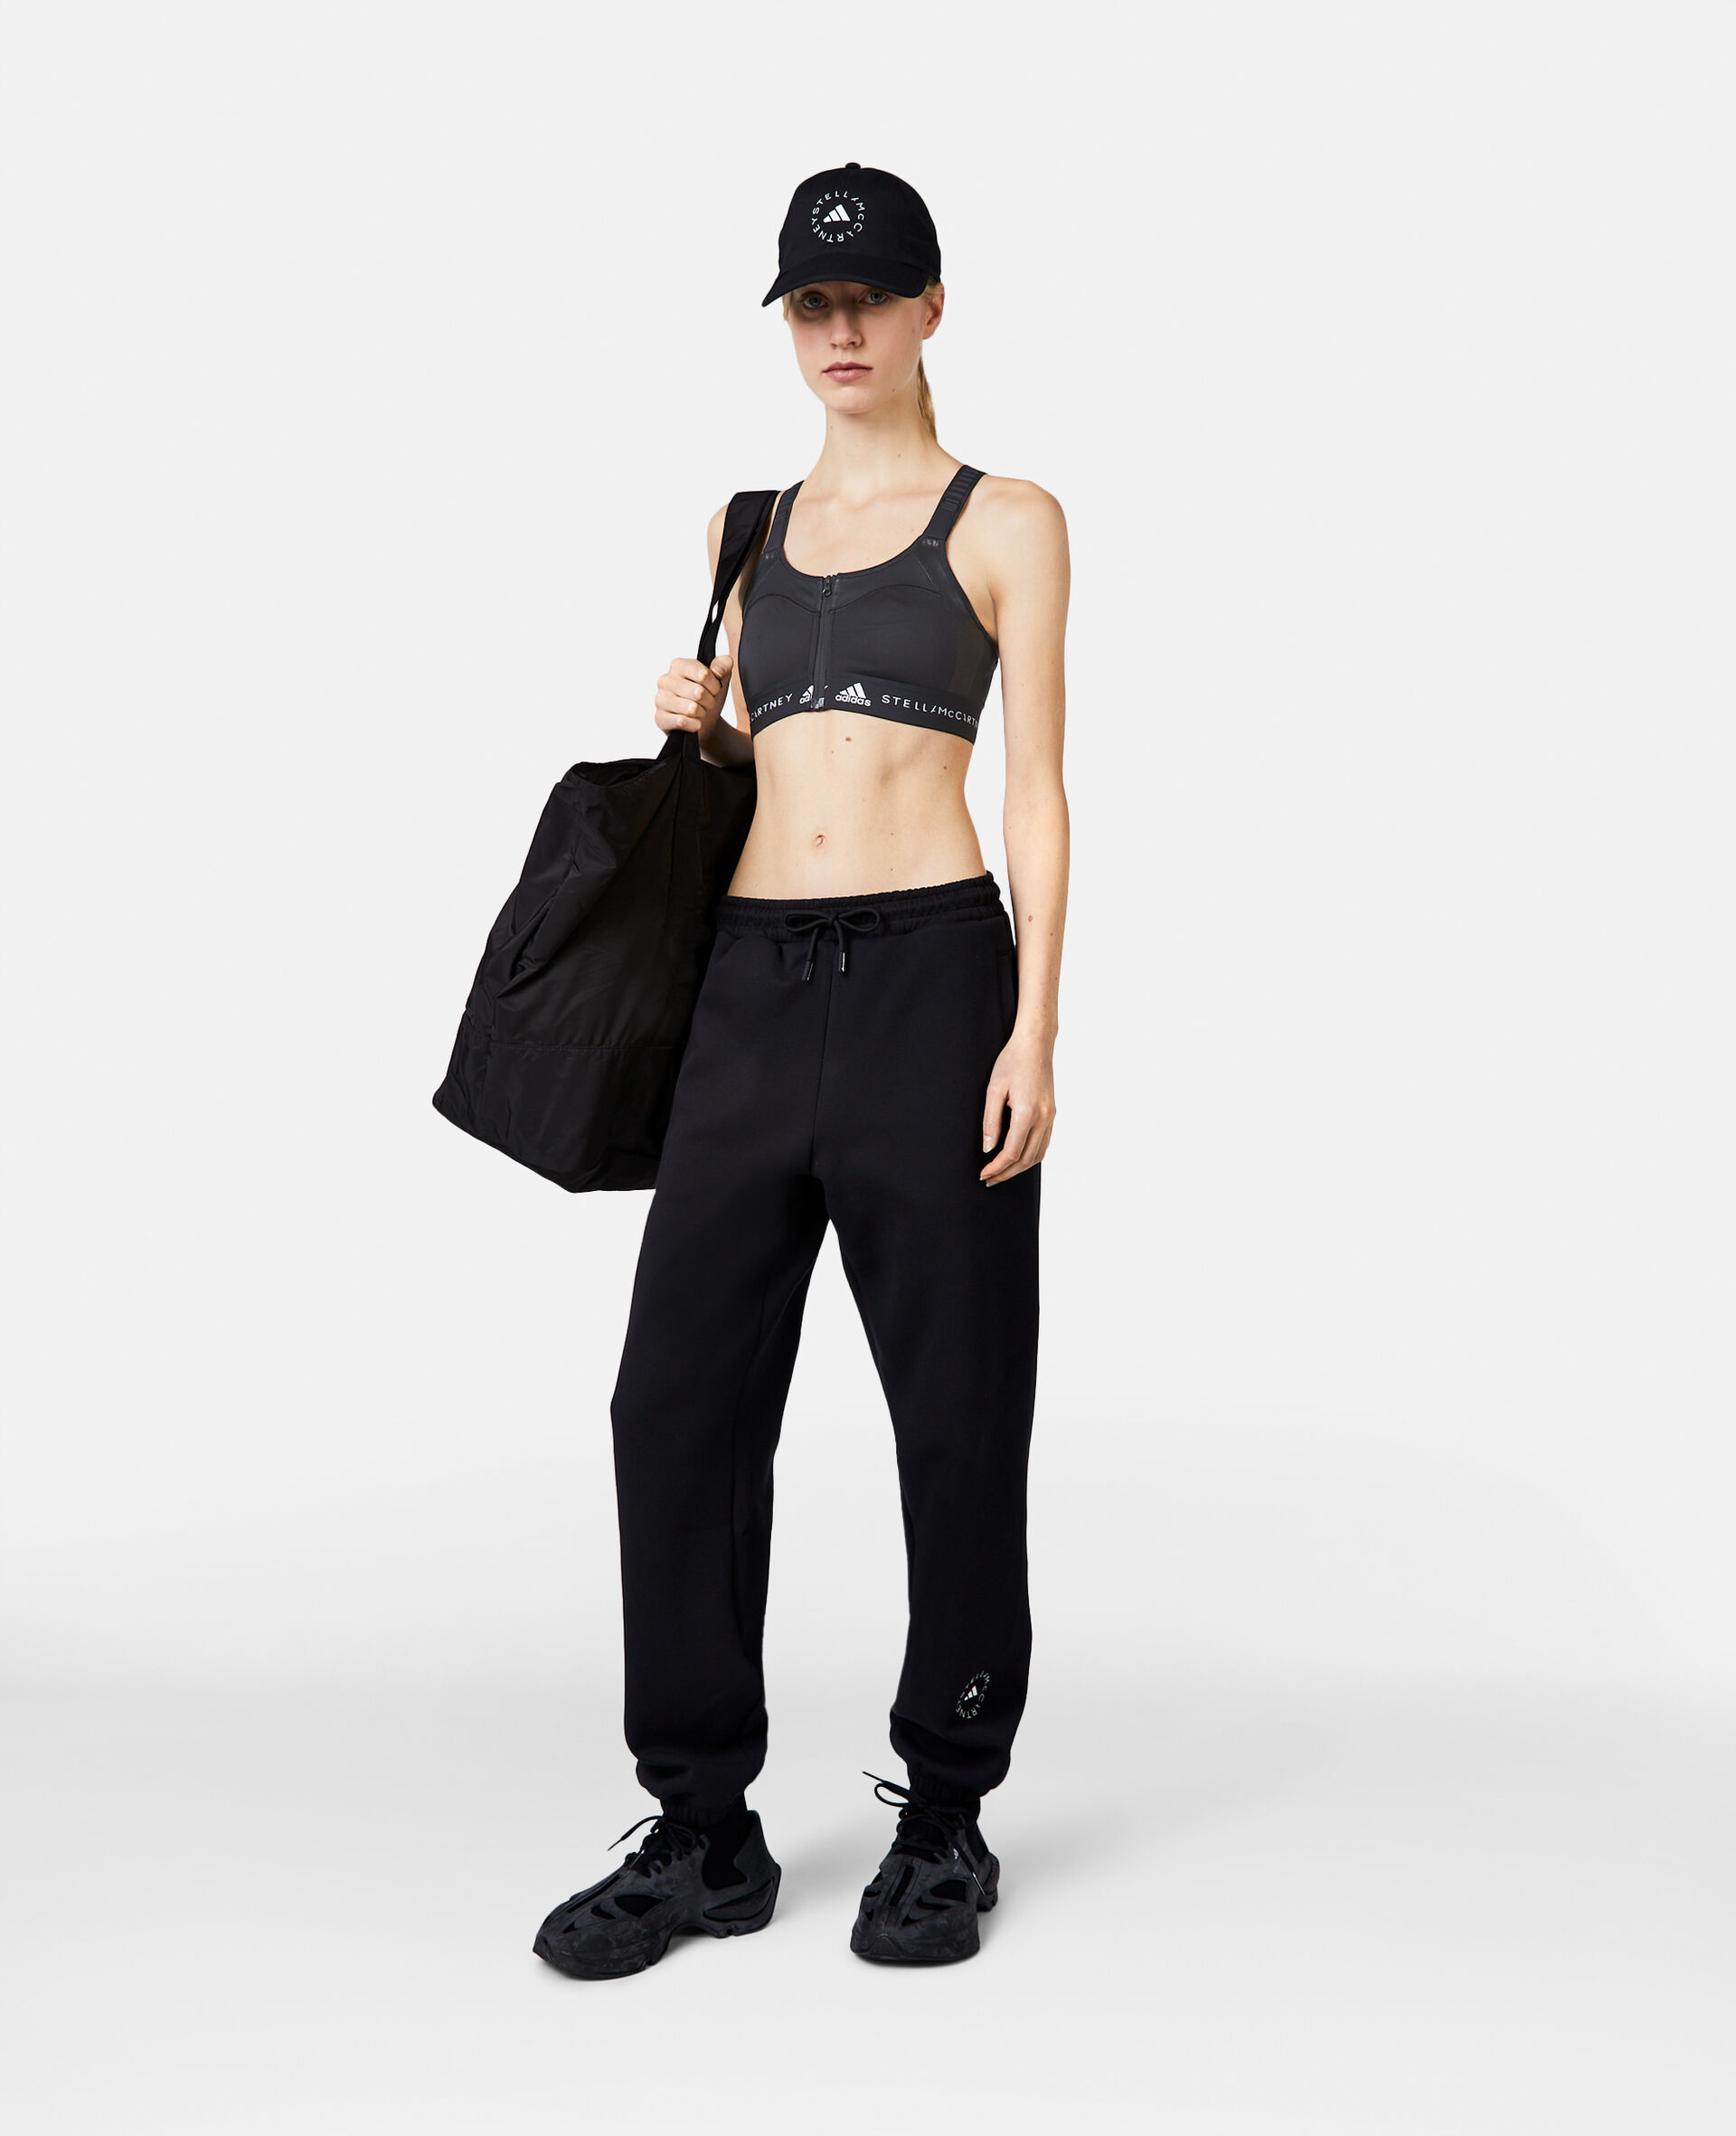 Adidas Sports Bra Black Size XS - $14 (53% Off Retail) - From Alana